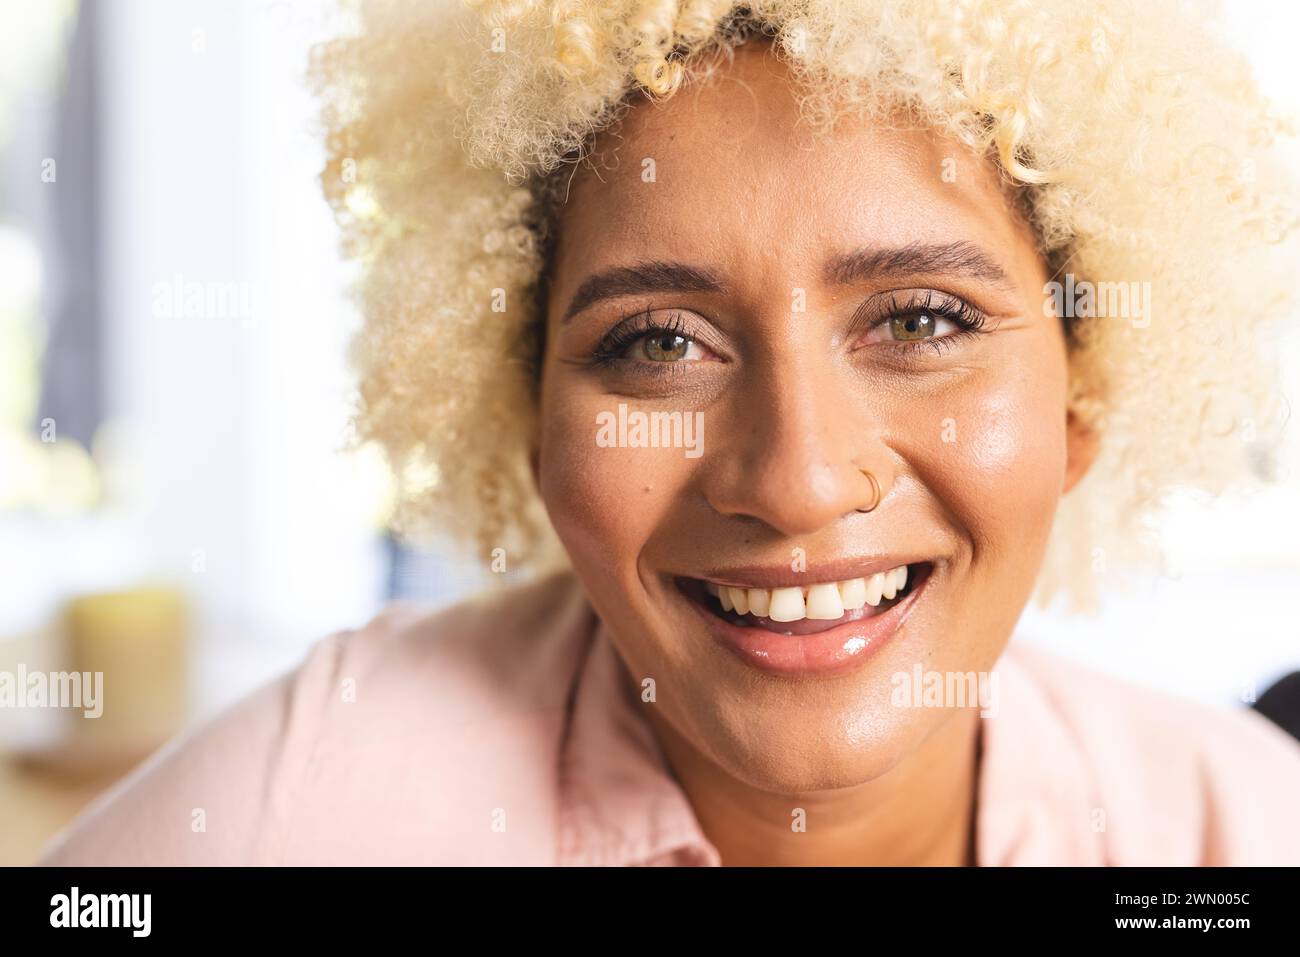 Jeune femme biraciale aux cheveux blonds bouclés sourit chaudement, portant une chemise rose clair Banque D'Images